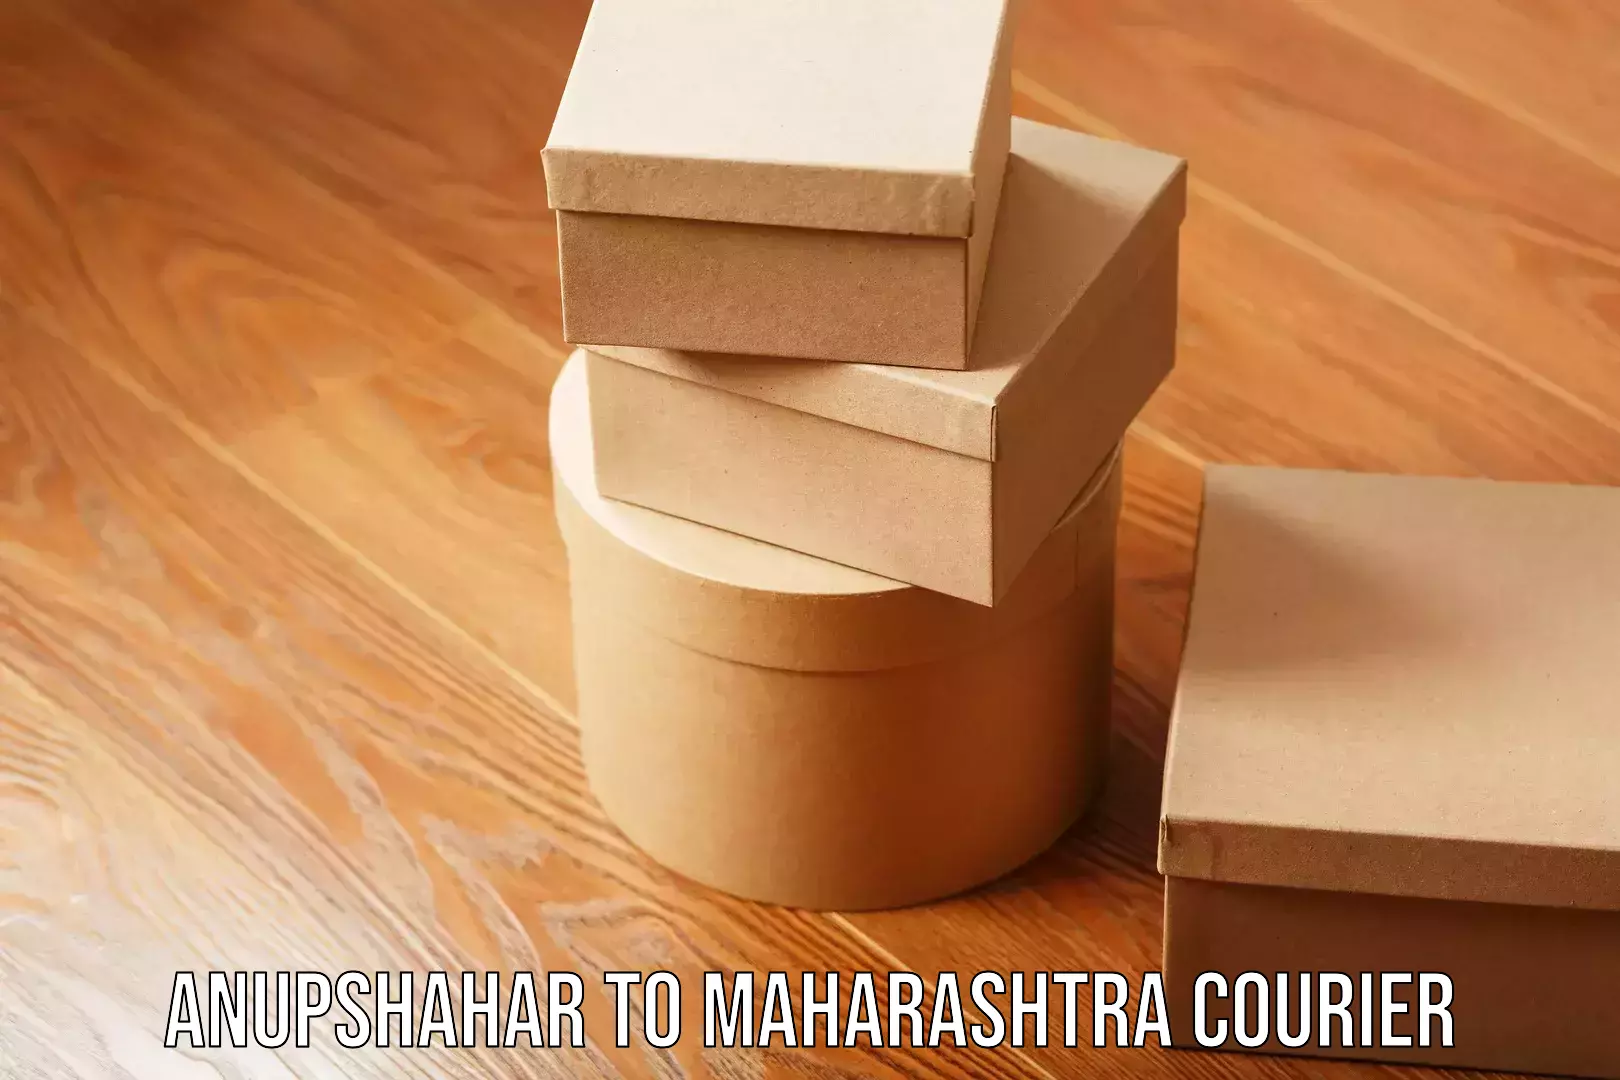 Customized shipping options Anupshahar to Maharashtra